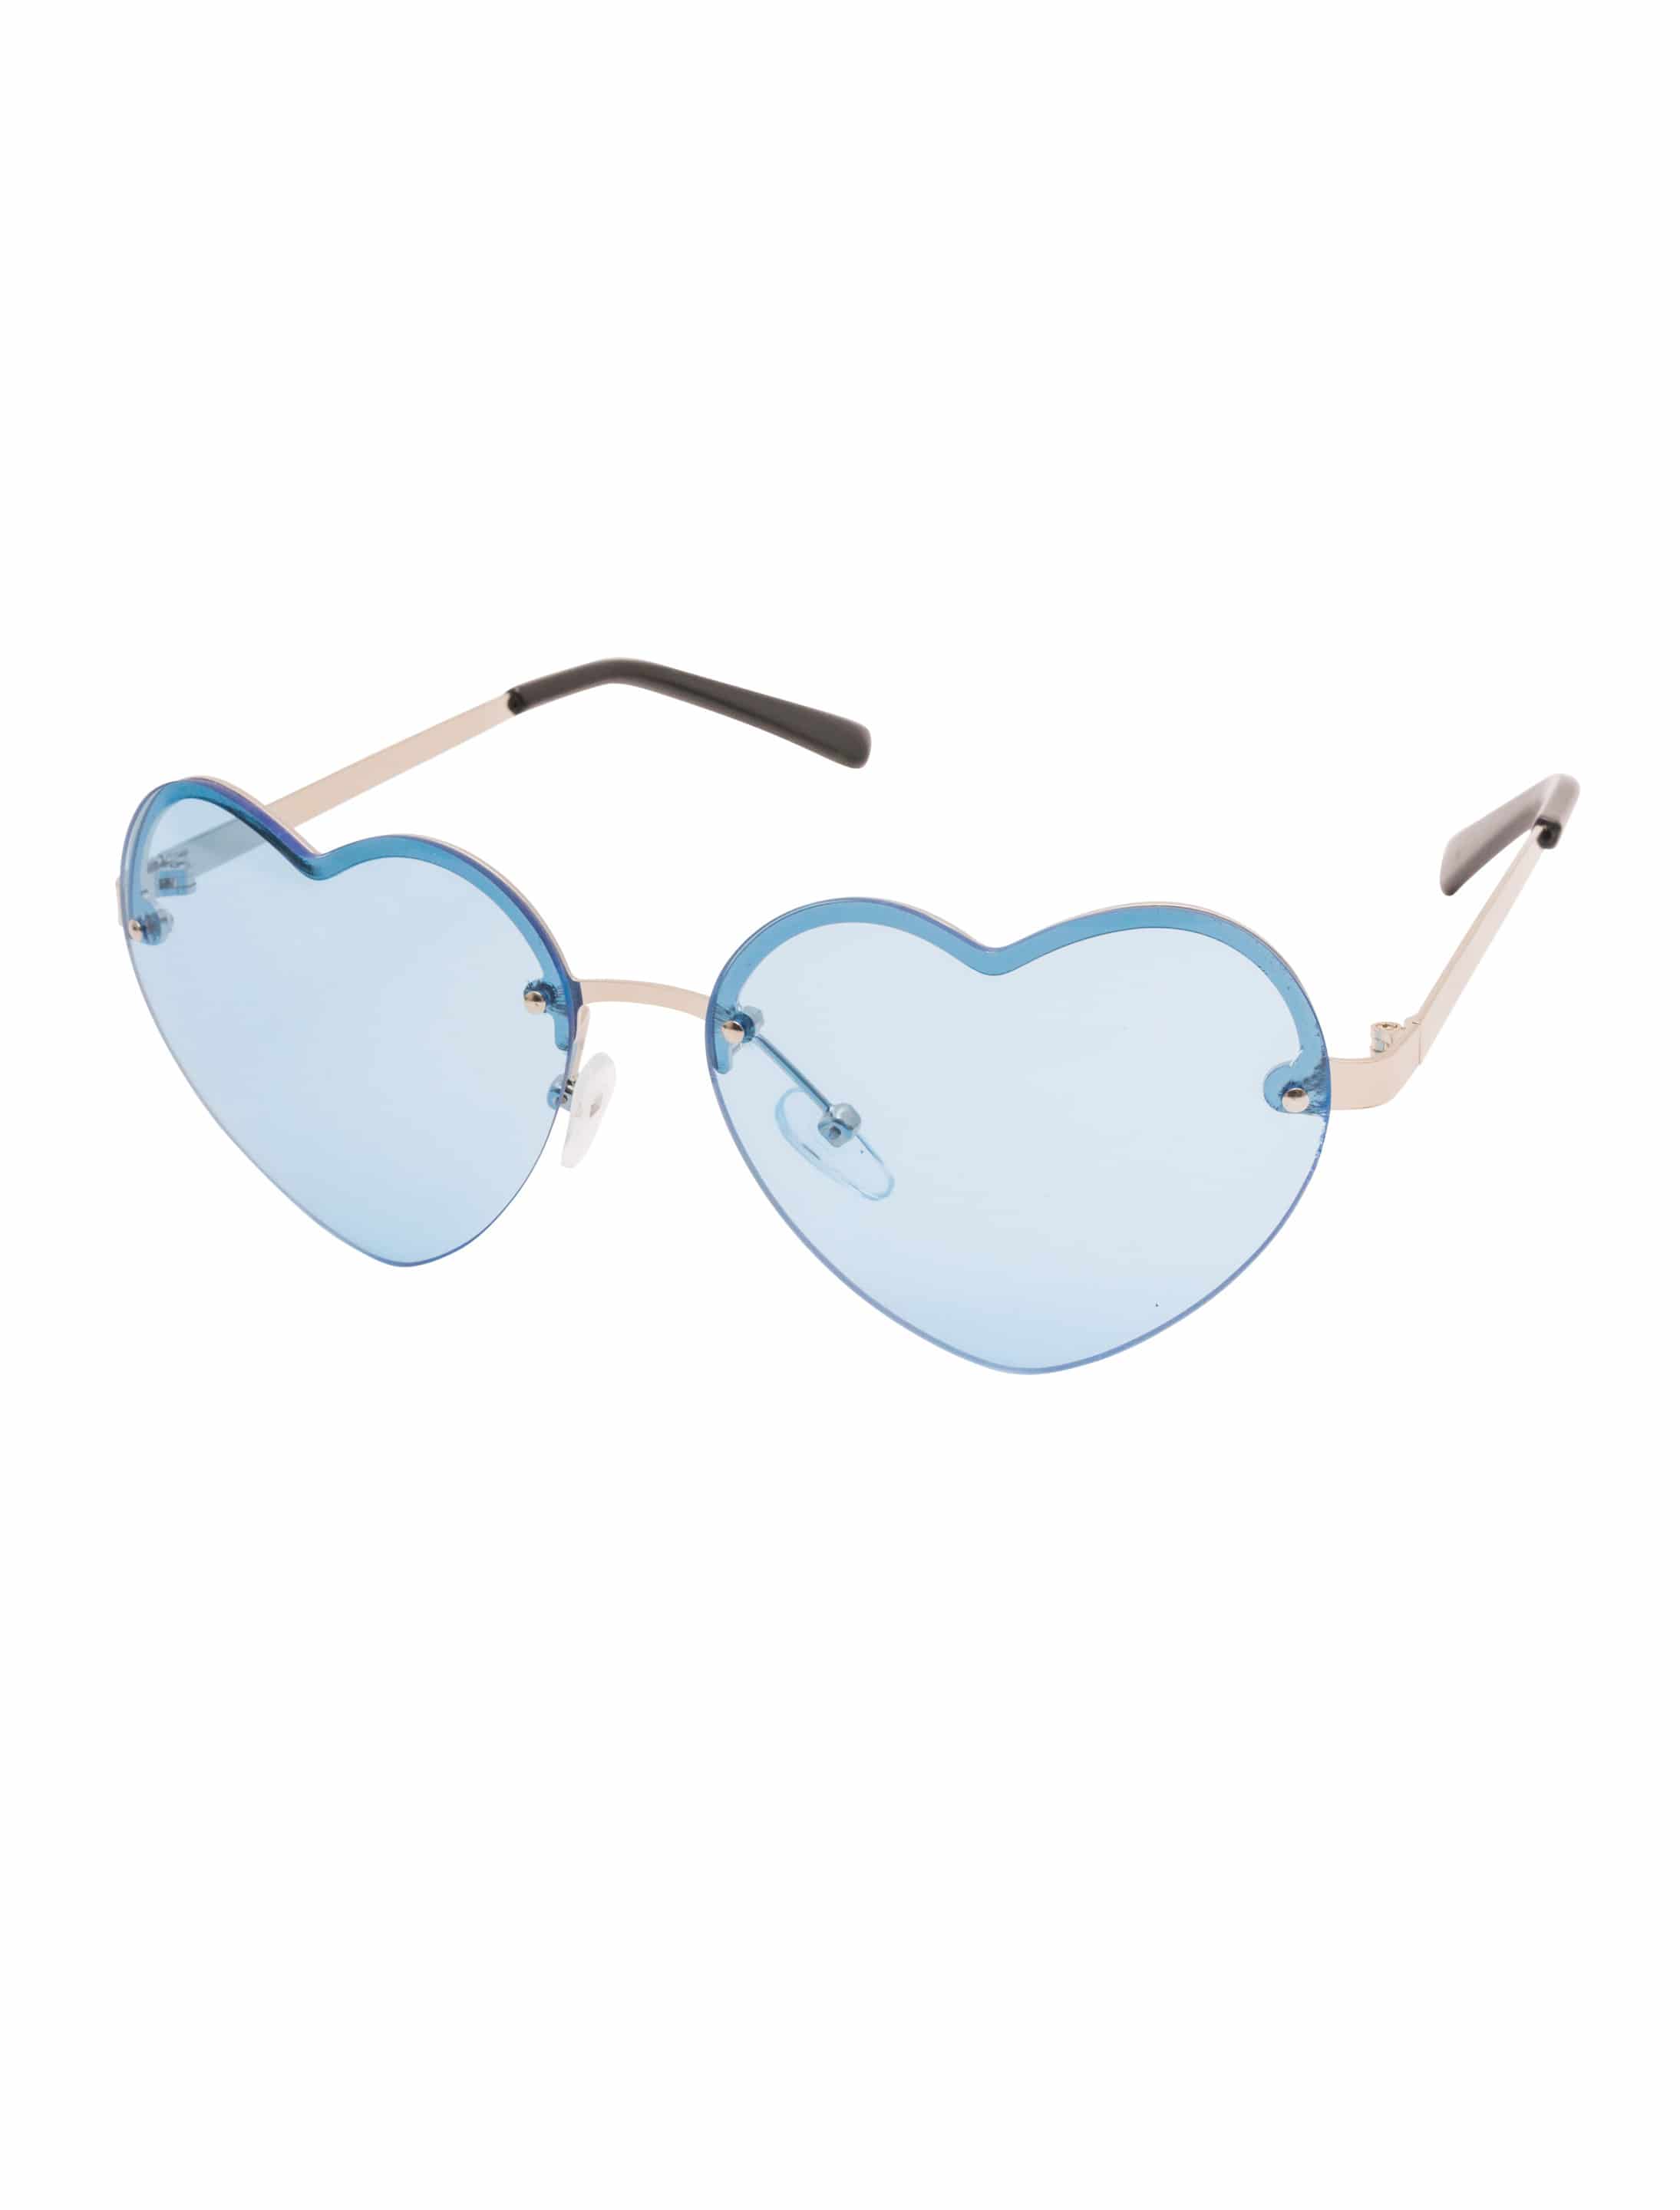 Brille Herz mit Gläsern blau